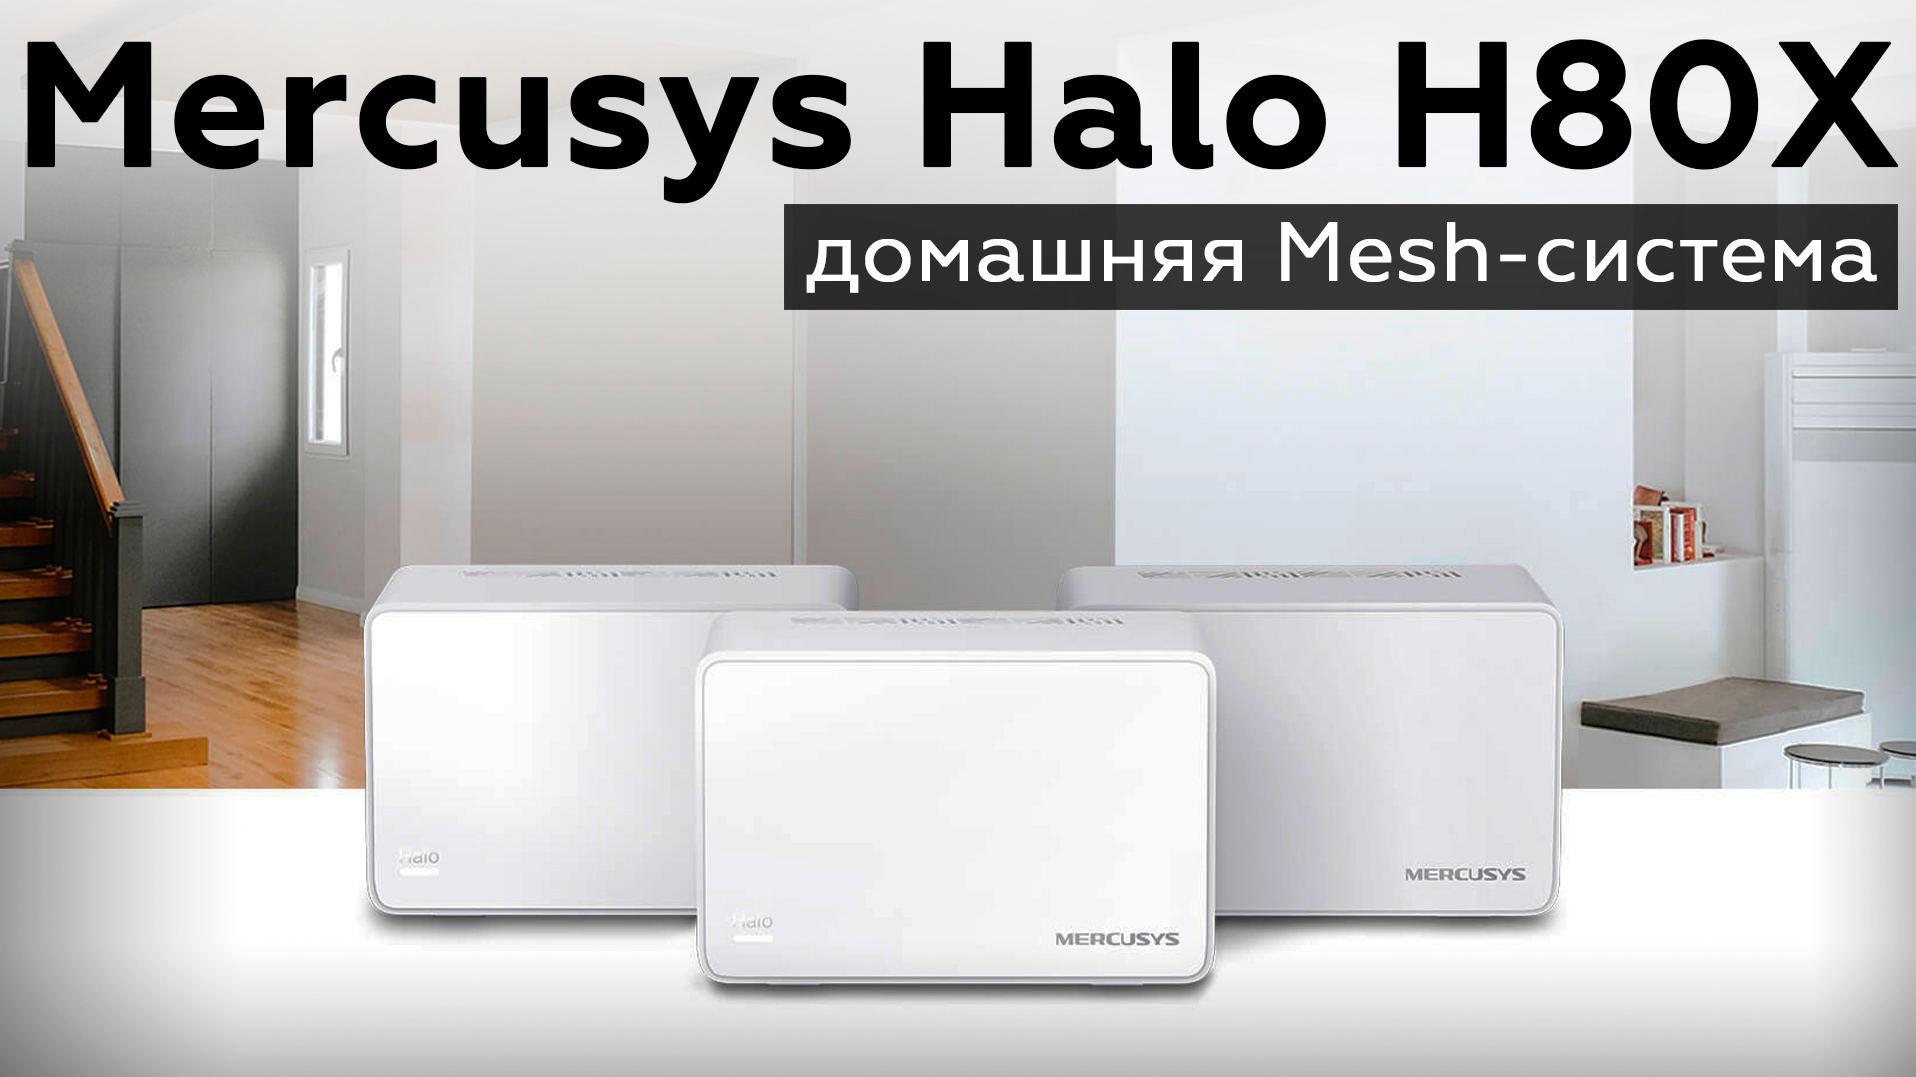 Обзор домашней Mesh-системы Mercusys Halo H80X